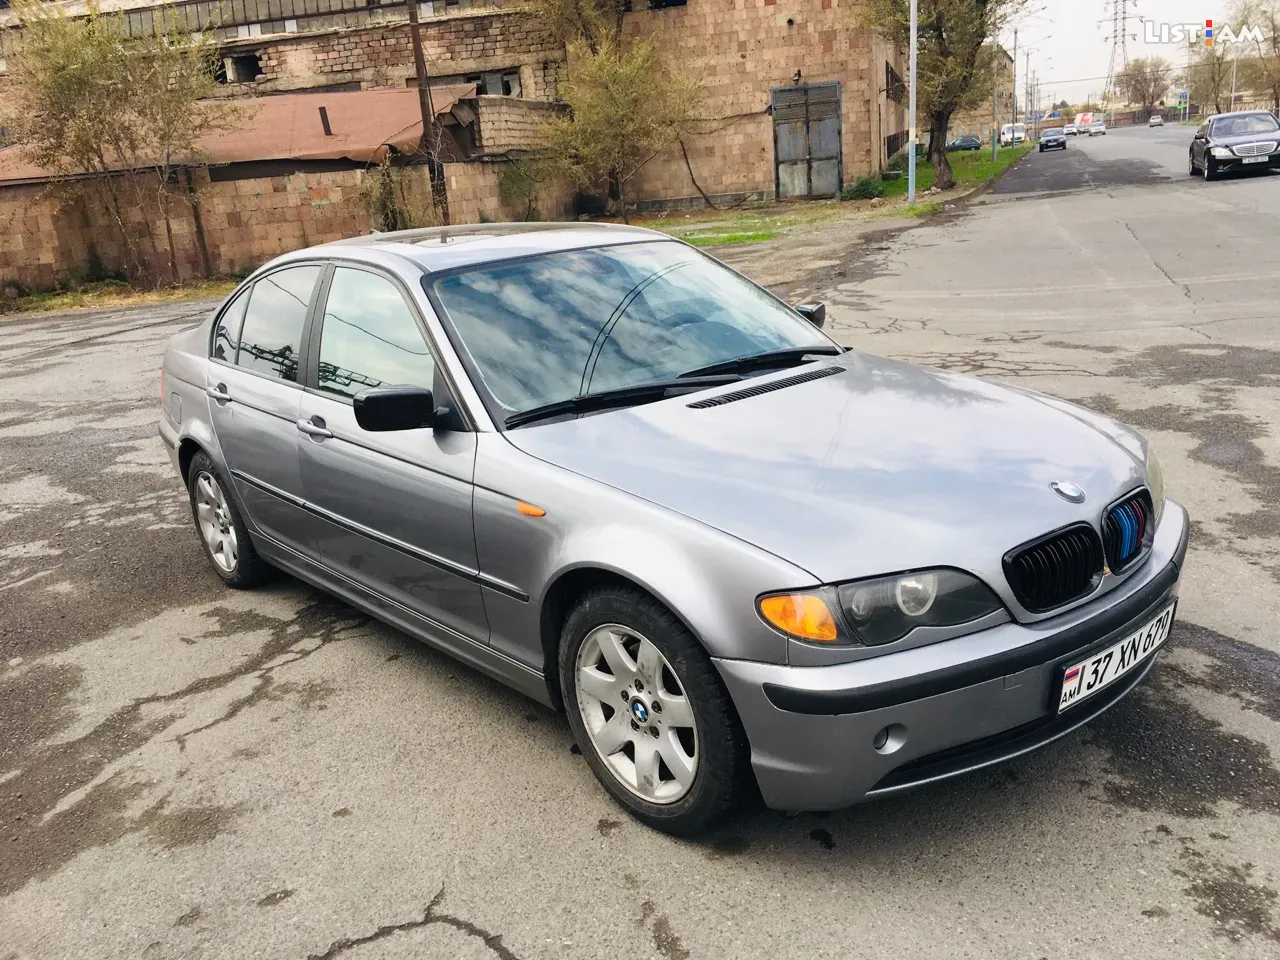 BMW 3 Series, 2.5 л., 2003 г., газ - Автомобили - List.am